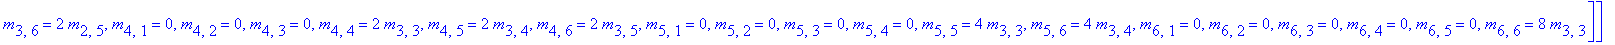 S := [[m[1,1] = 1/4*m[3,3], m[1,2] = 1/4*m[3,4], m[1,3] = 1/4*m[3,5], m[1,4] = 1/2*m[2,5], m[1,5] = 1/2*m[2,6]+15/4*m[3,3], m[1,6] = m[1,6], m[2,1] = 0, m[2,2] = 1/2*m[3,3], m[2,3] = 1/2*m[3,4], m[2,4]...